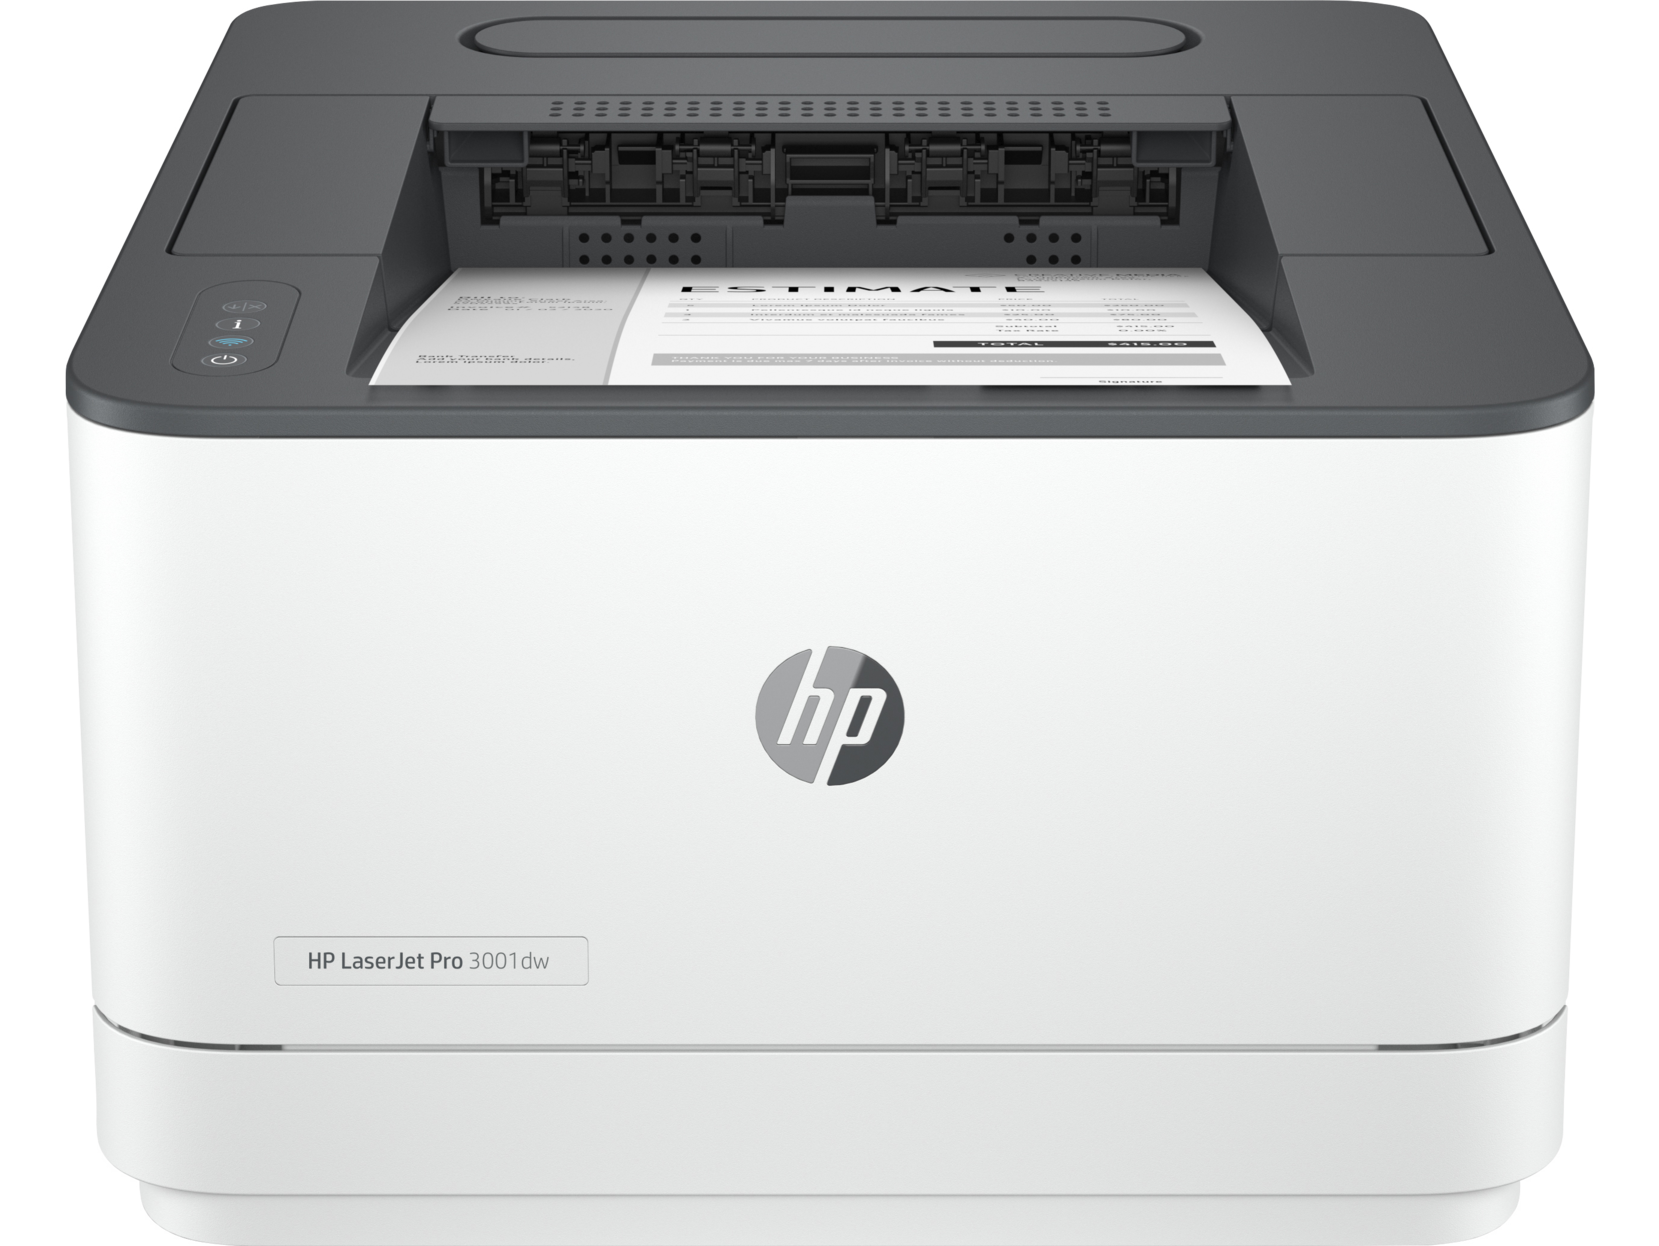 HP LaserJet Pro 3001dwe toner cartridge's printer